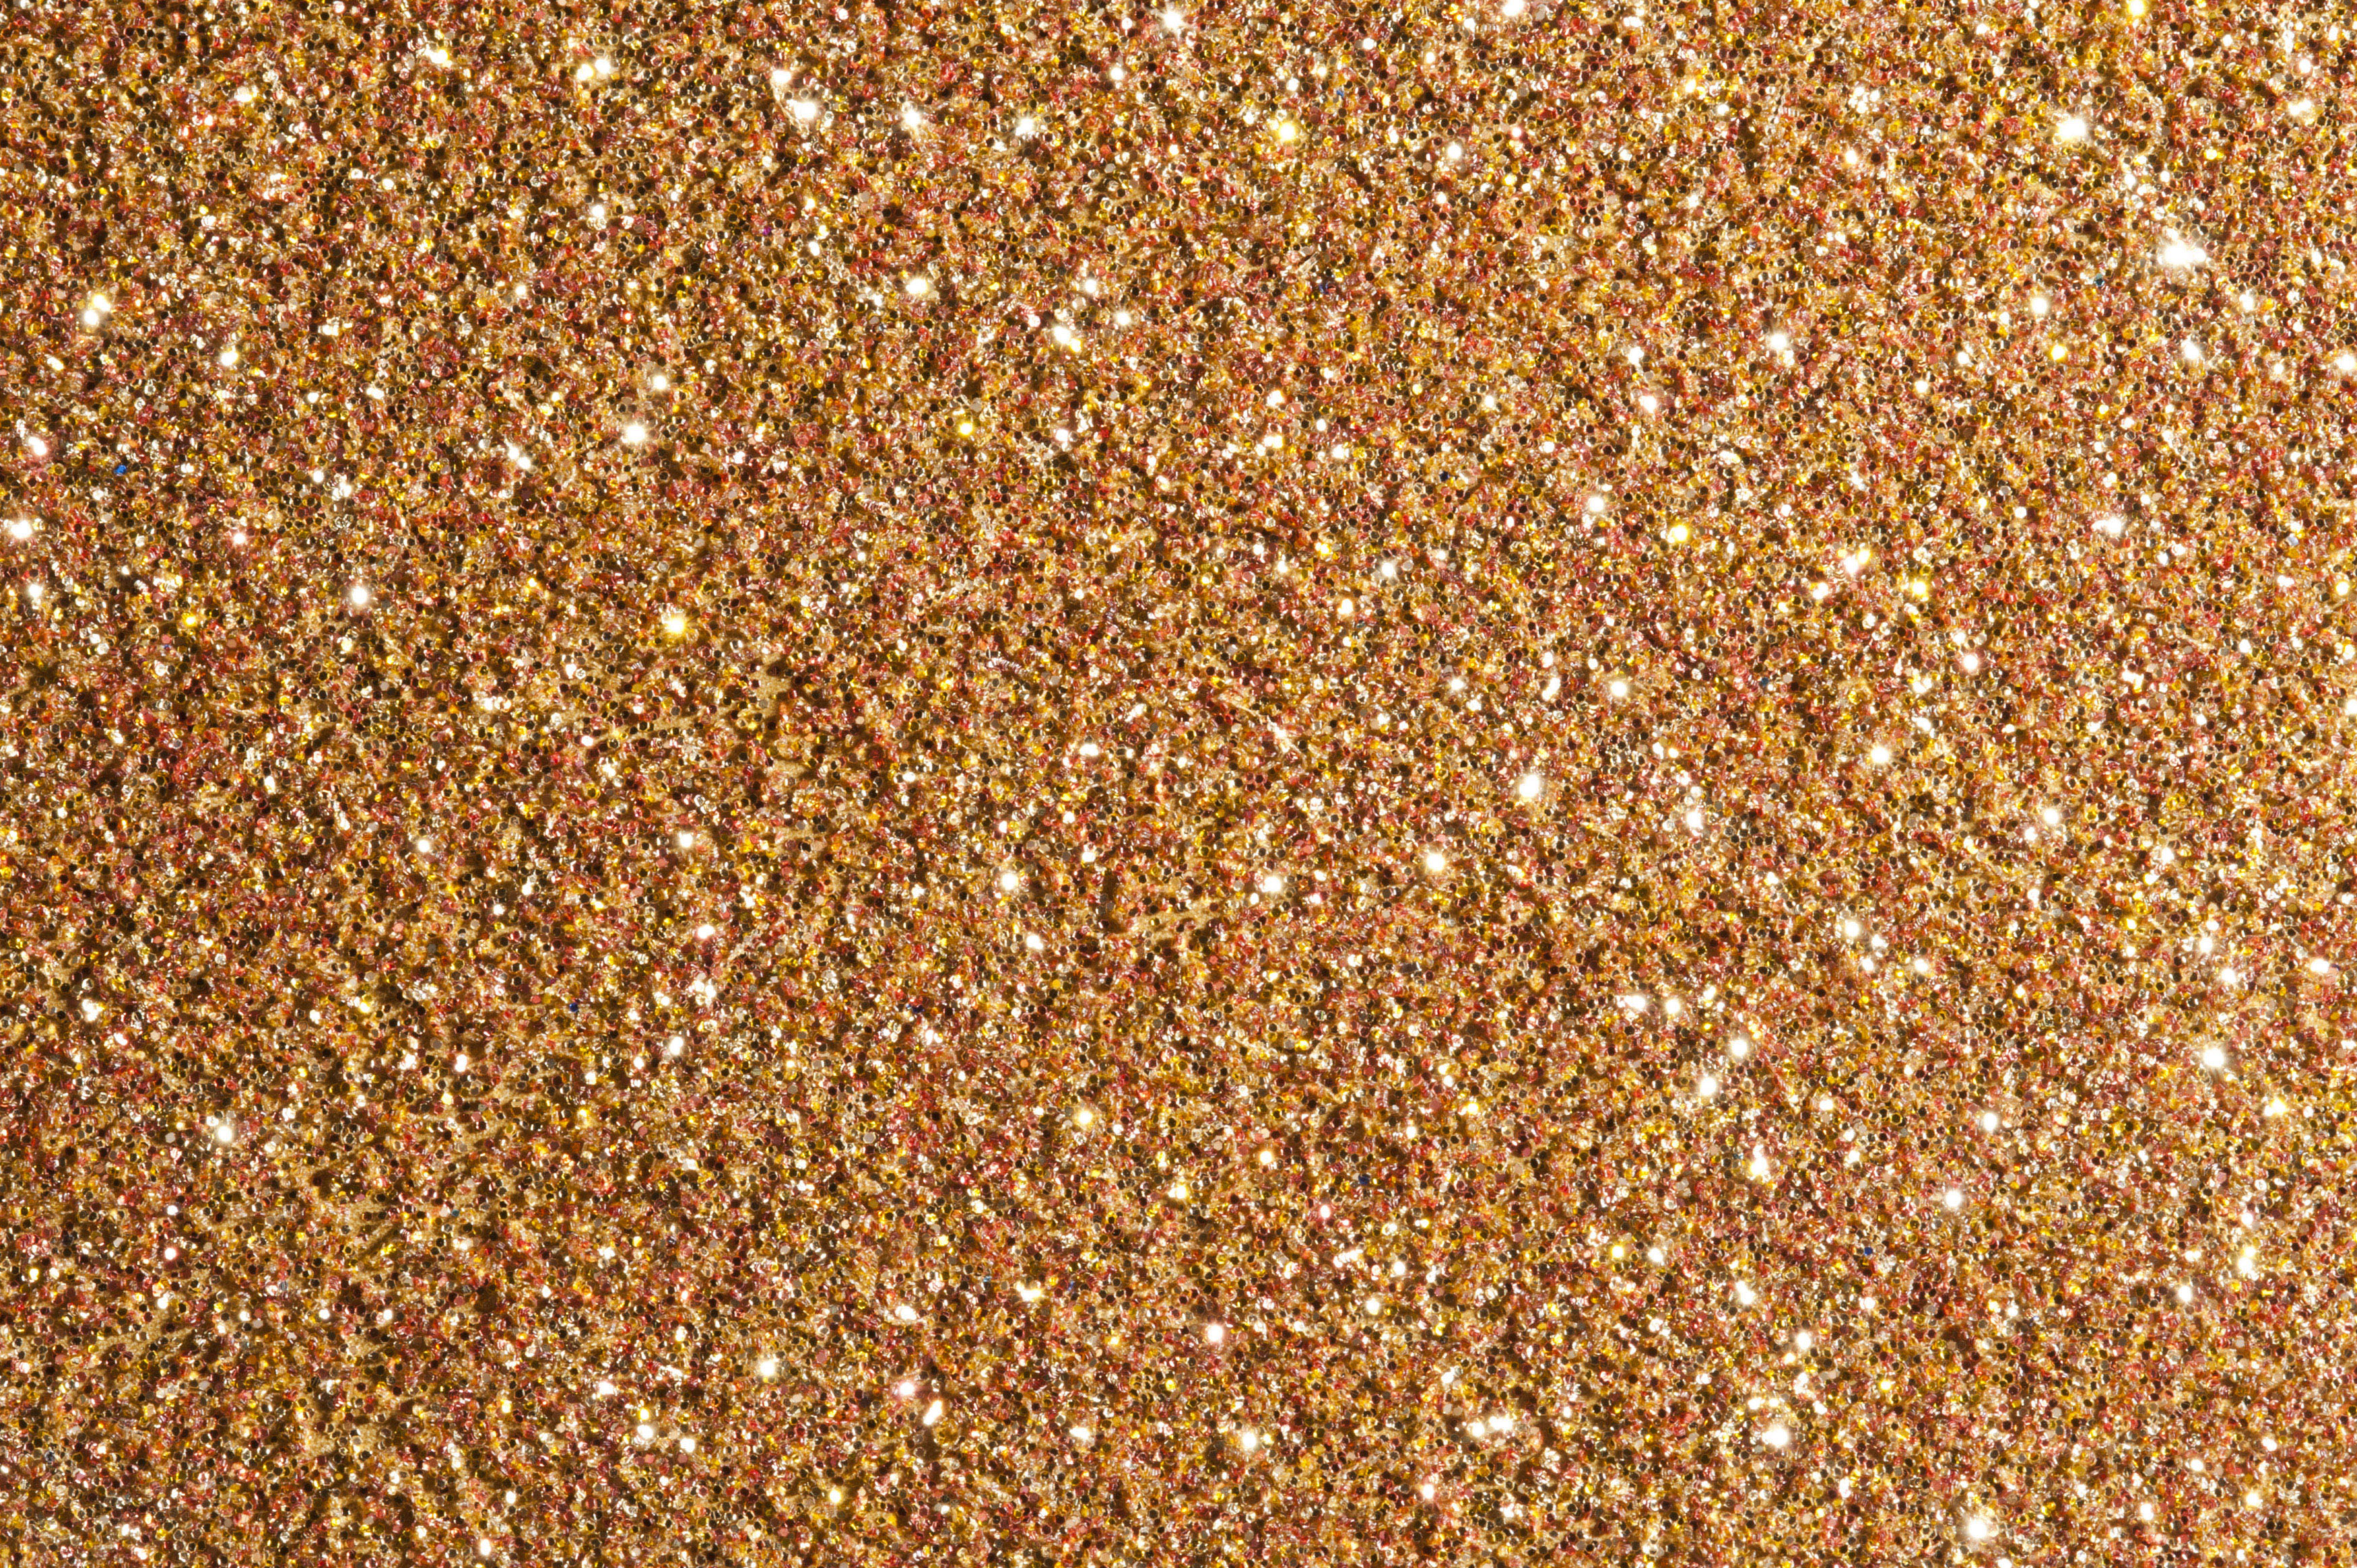 Bronze Glitter Background